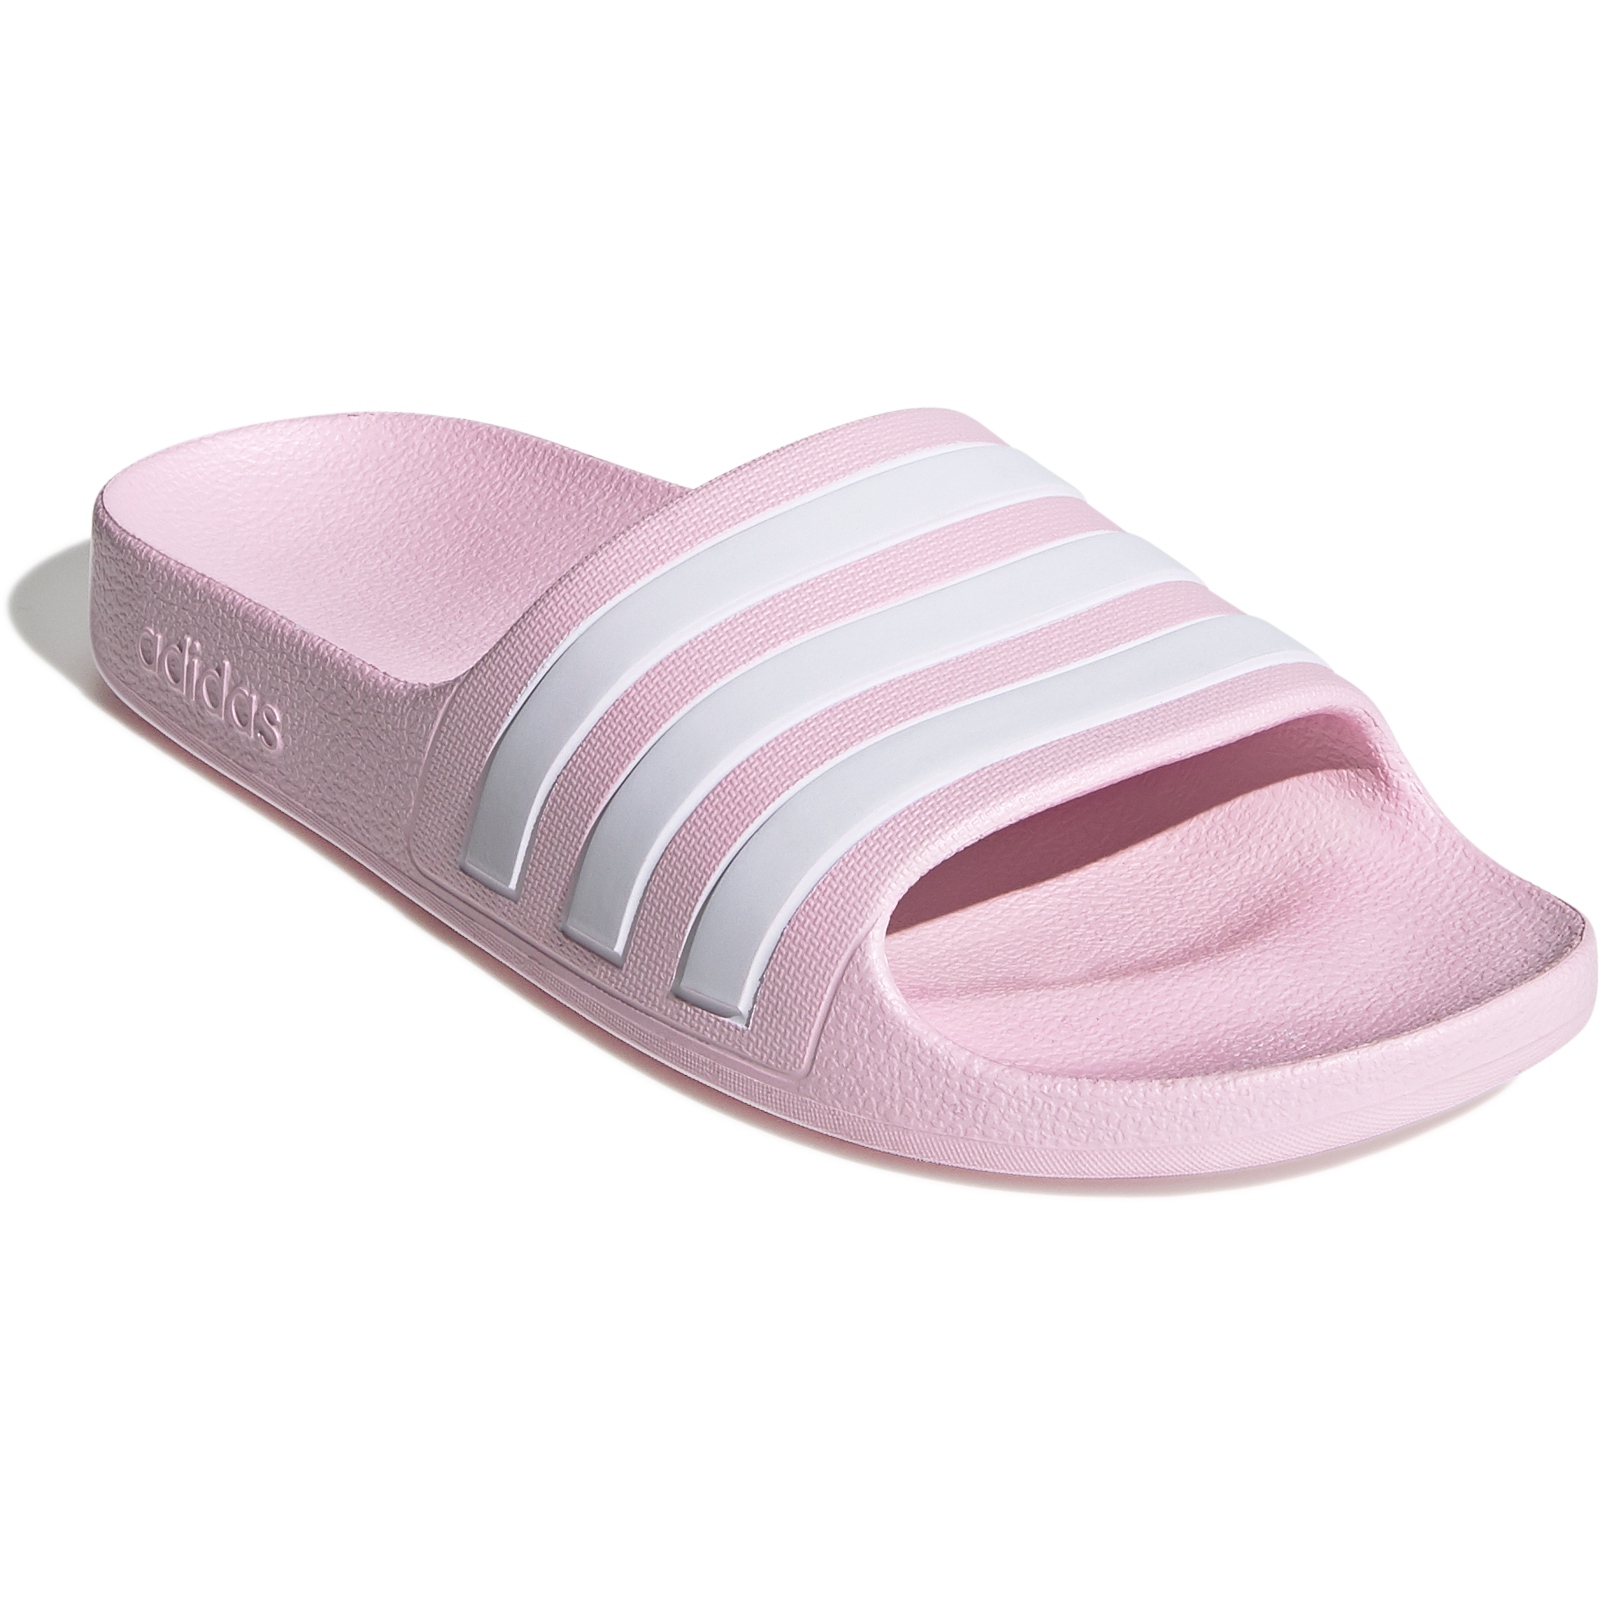 Produktbild von adidas Adilette Aqua Badesandalen Kinder - clear pink/white/clear pink FY8072